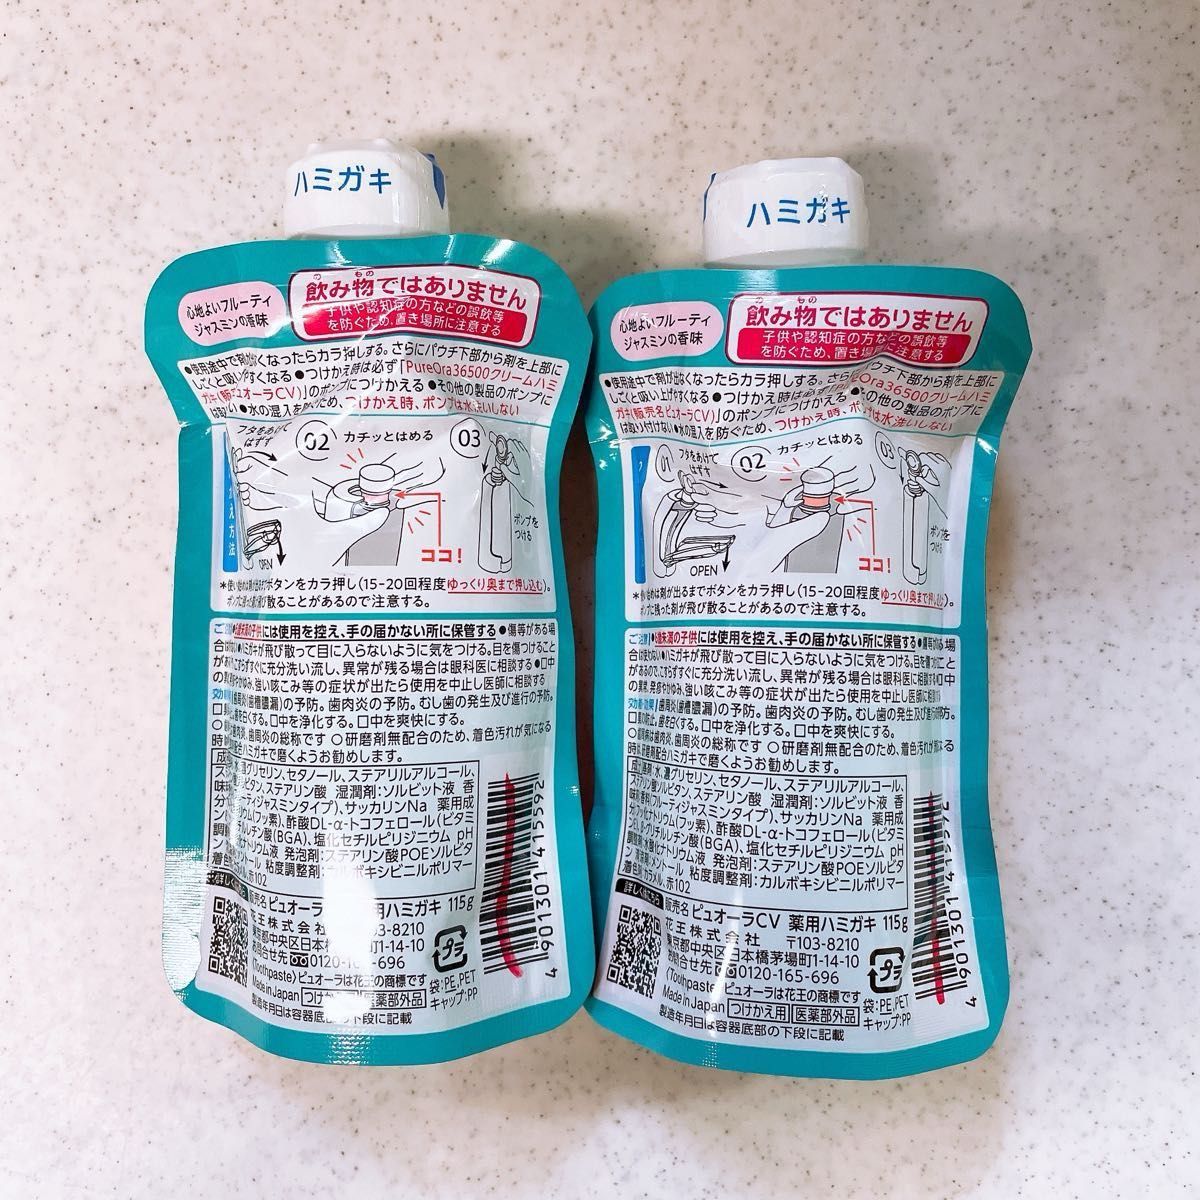 【pureora】ピュオーラCV 薬用ハミガキ 115g (フルーティジャスミンの香味) 2個セット